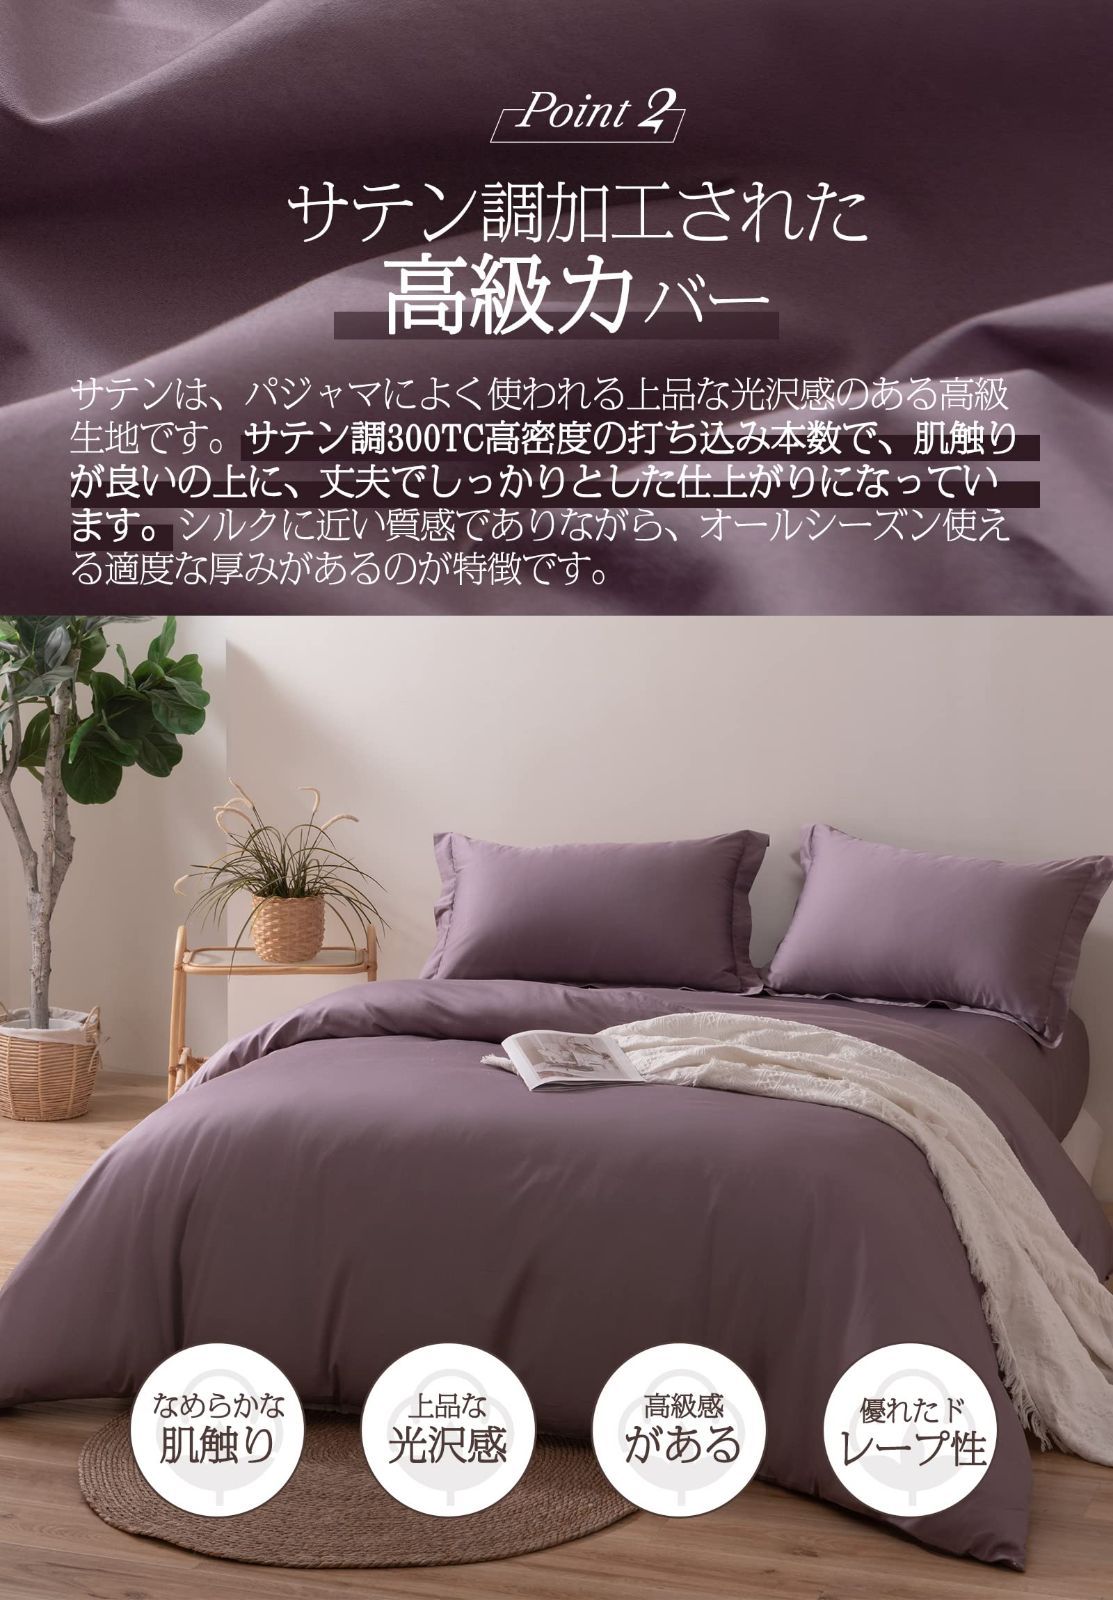 【色: 紫色】MILDLY 掛け布団カバー シングル 150x210cm 単品